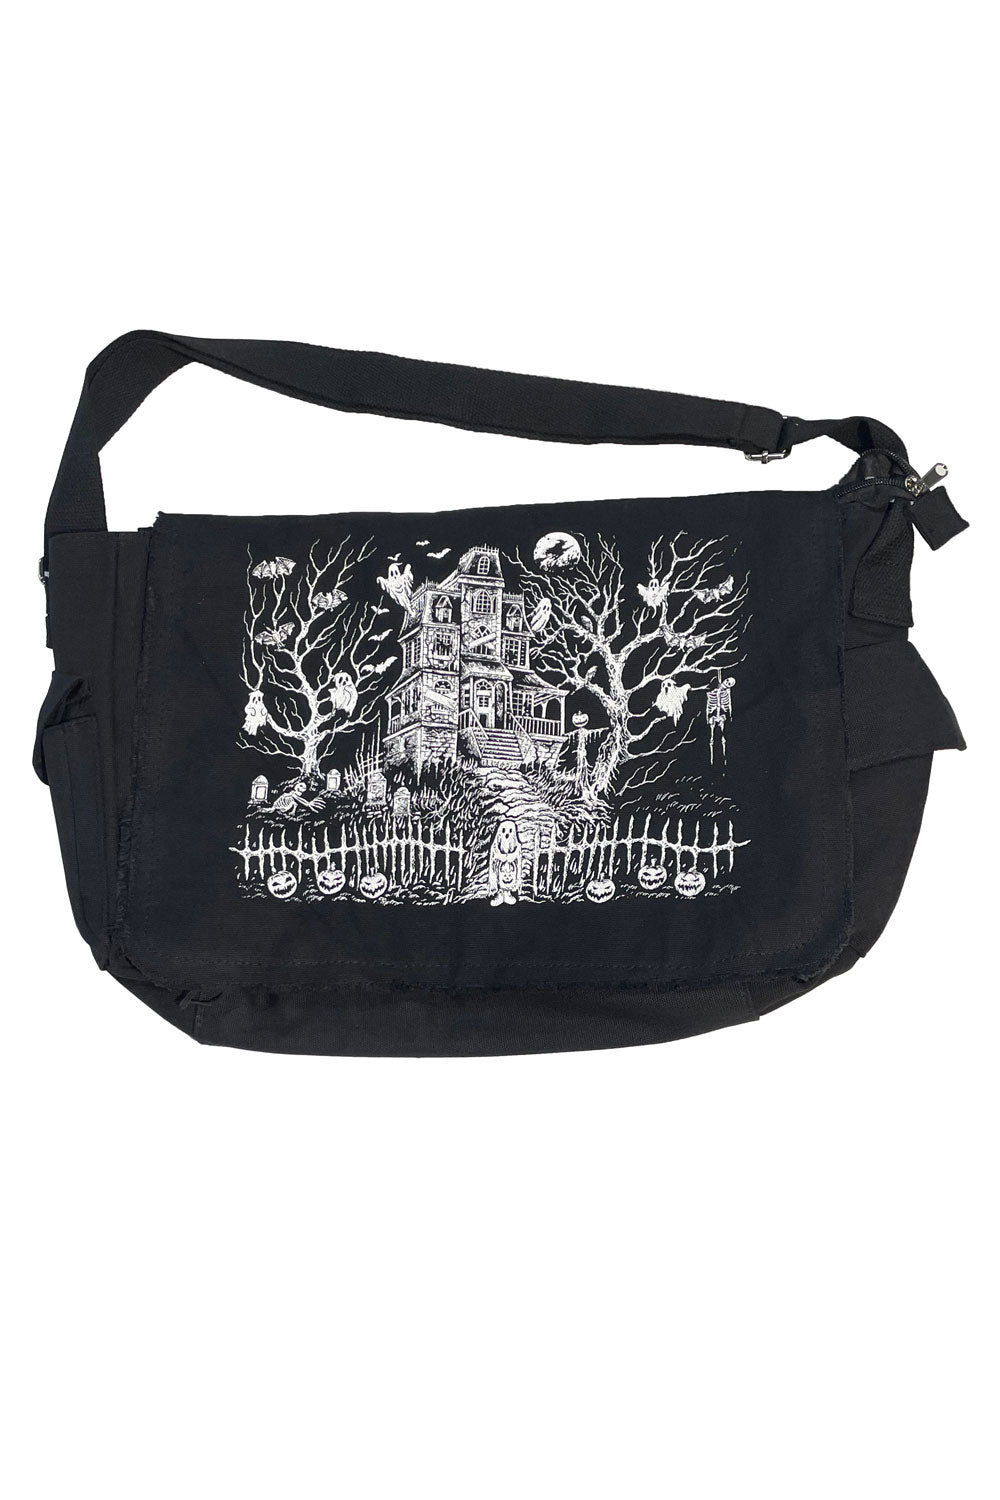 haunted mansion messenger bag